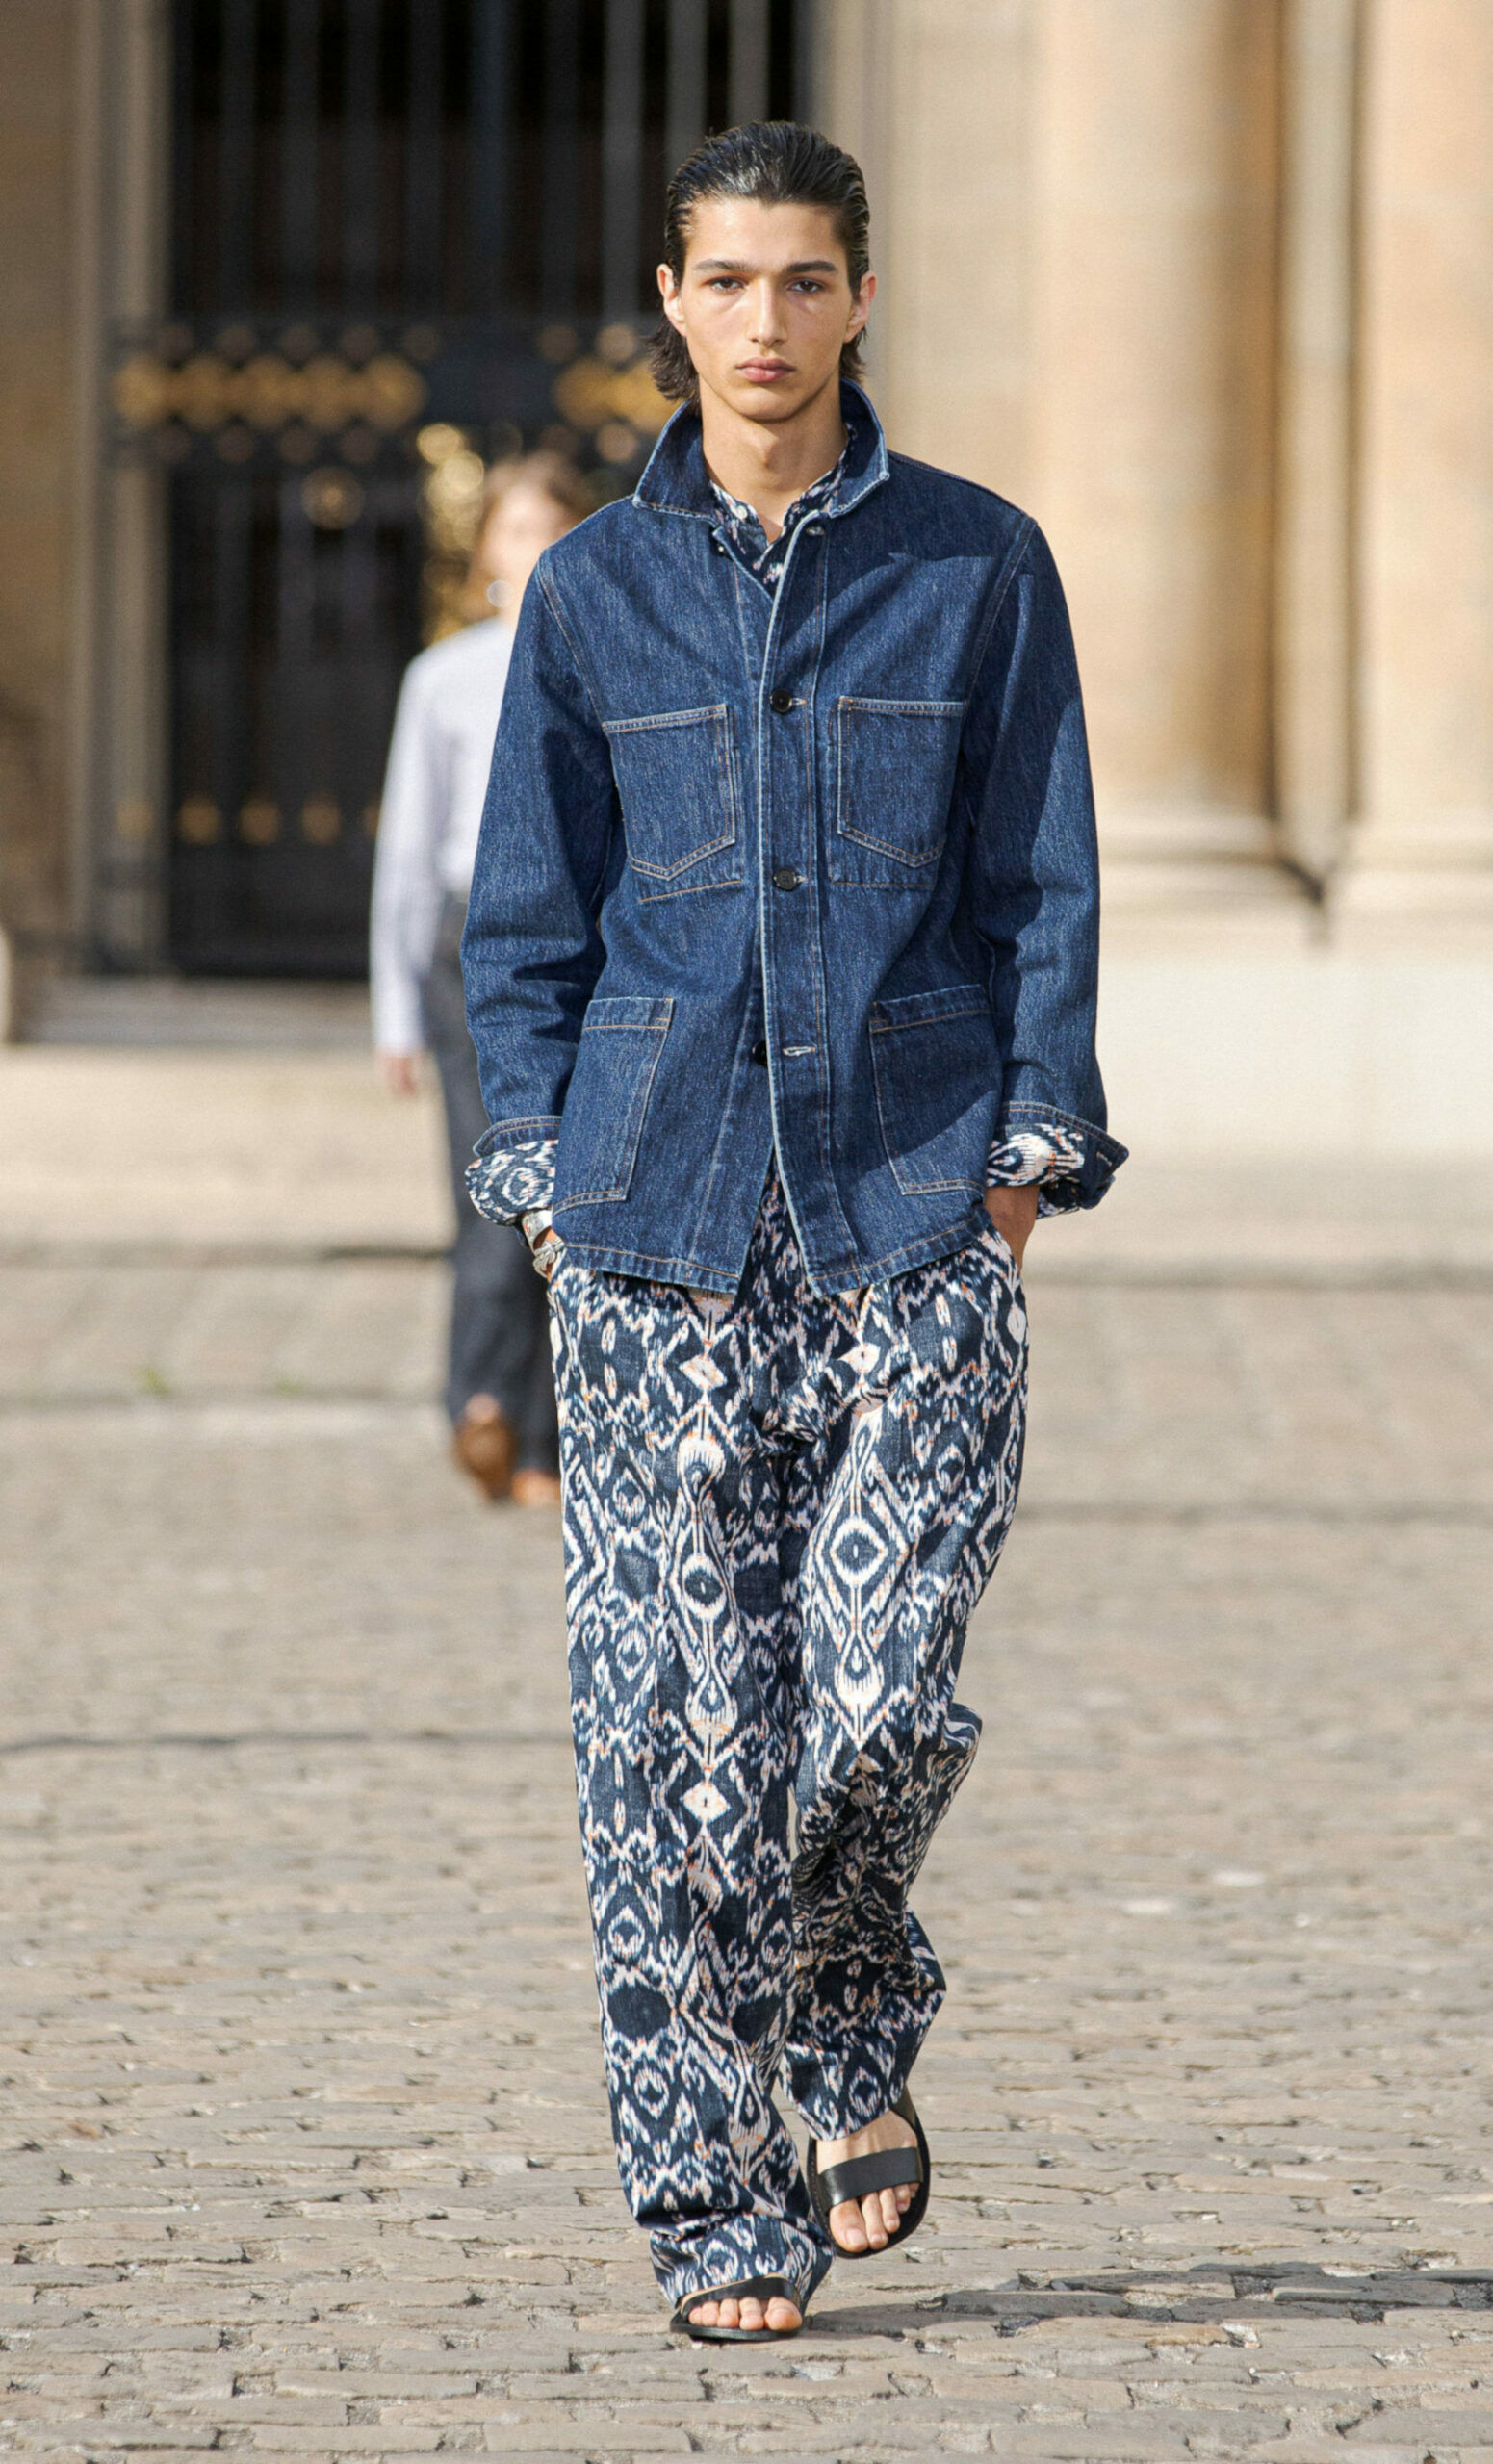 Männermodel in dunkelblauer Jeansjacke im Workwear-Style, dazu weite Hose mit blauem Ethnomuster